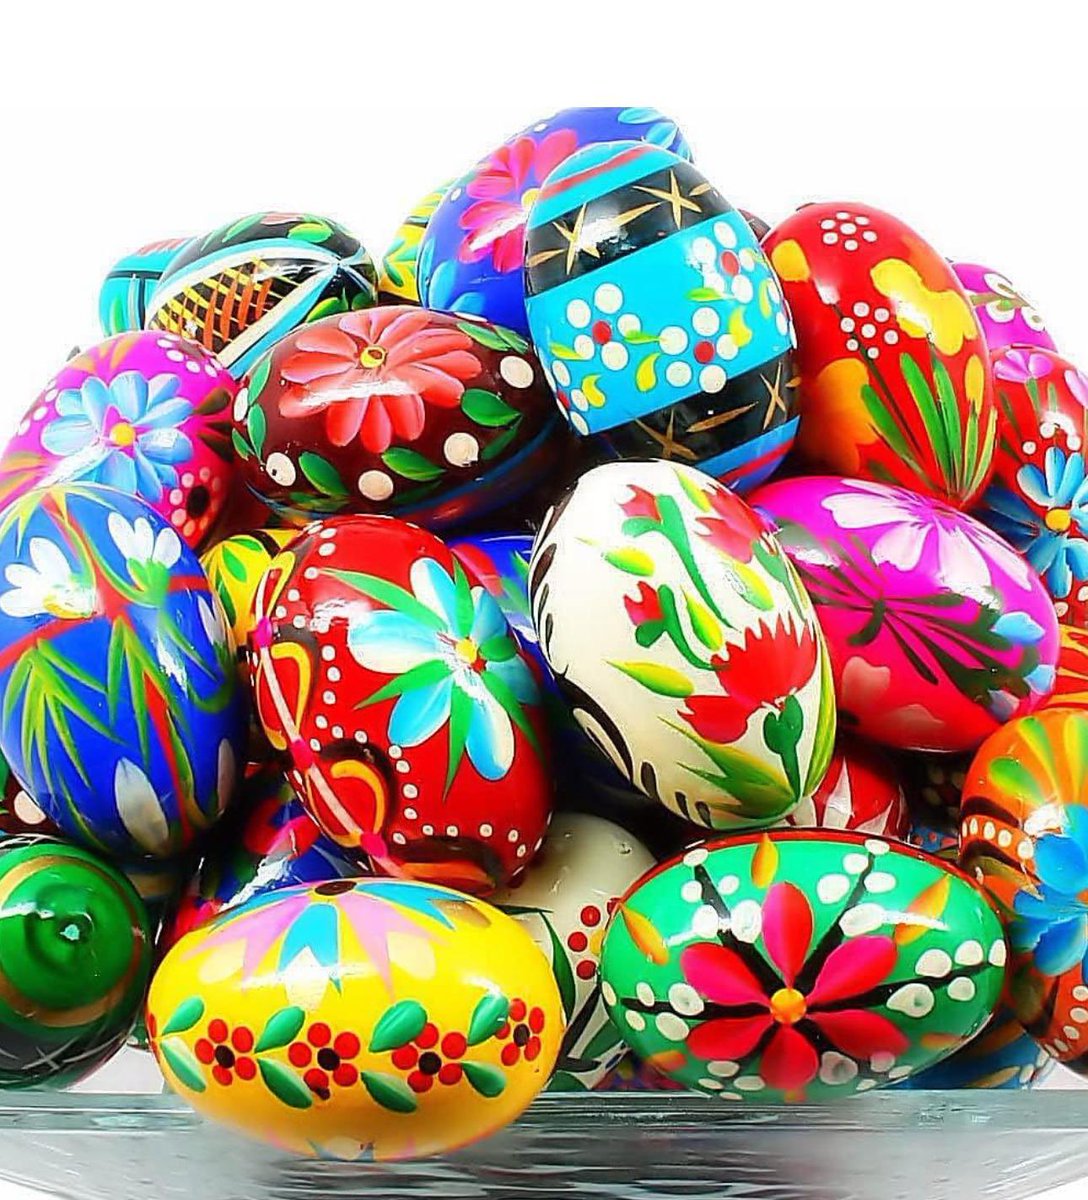 Kardeşlik, sevgi ve barış duygularımla Anadolumuzun zenginliği olarak gördüğüm tüm Hristiyan vatandaşlarımızın Paskalya Bayramı’nı kutluyorum.